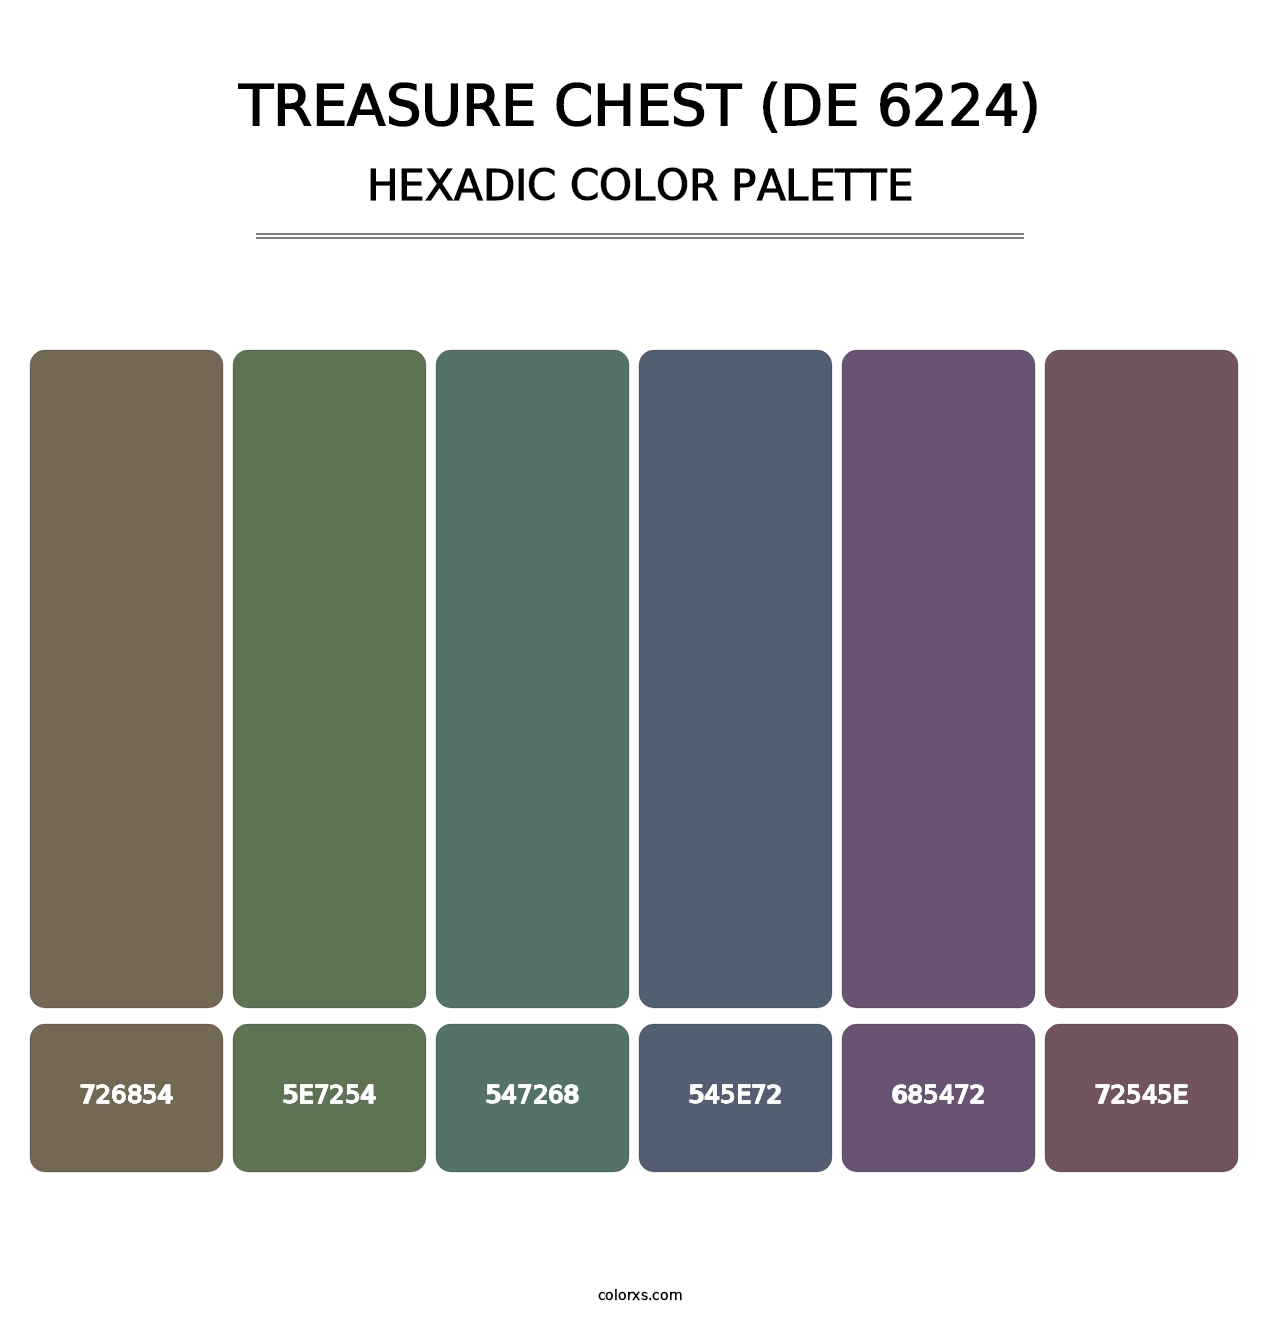 Treasure Chest (DE 6224) - Hexadic Color Palette